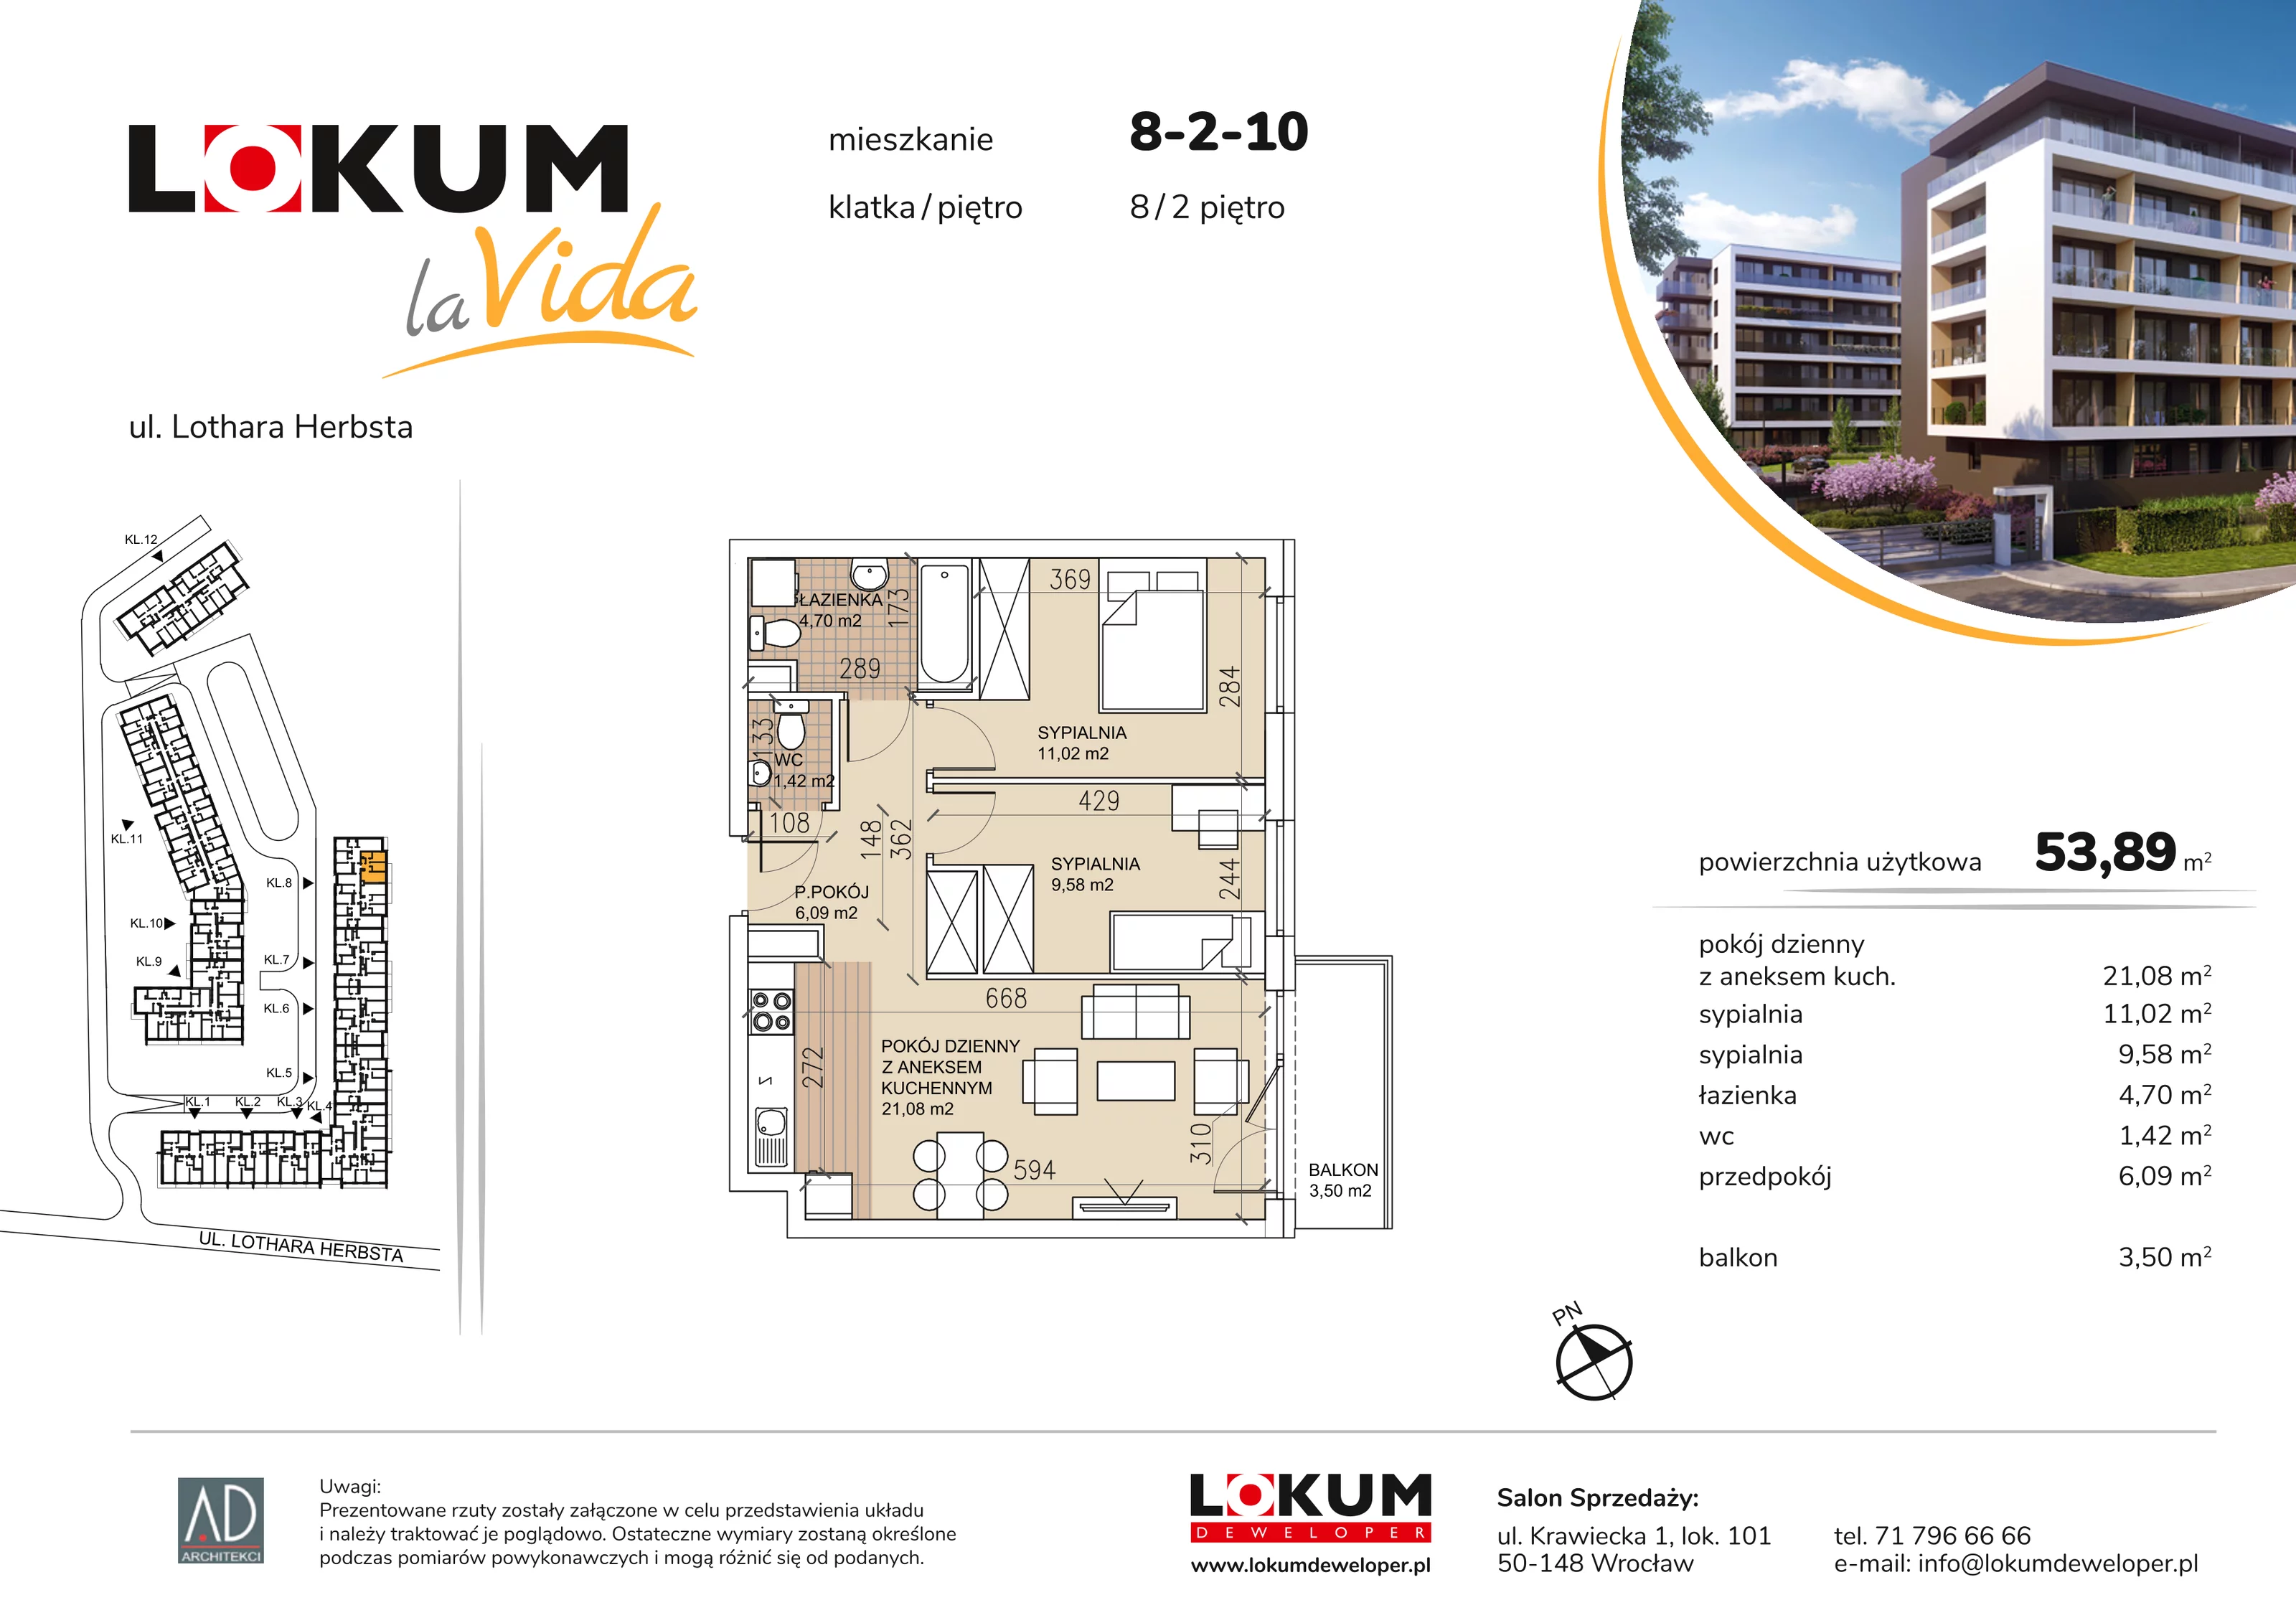 Mieszkanie 53,89 m², piętro 2, oferta nr 8-2-10, Lokum la Vida, Wrocław, Sołtysowice, ul. Lothara Herbsta